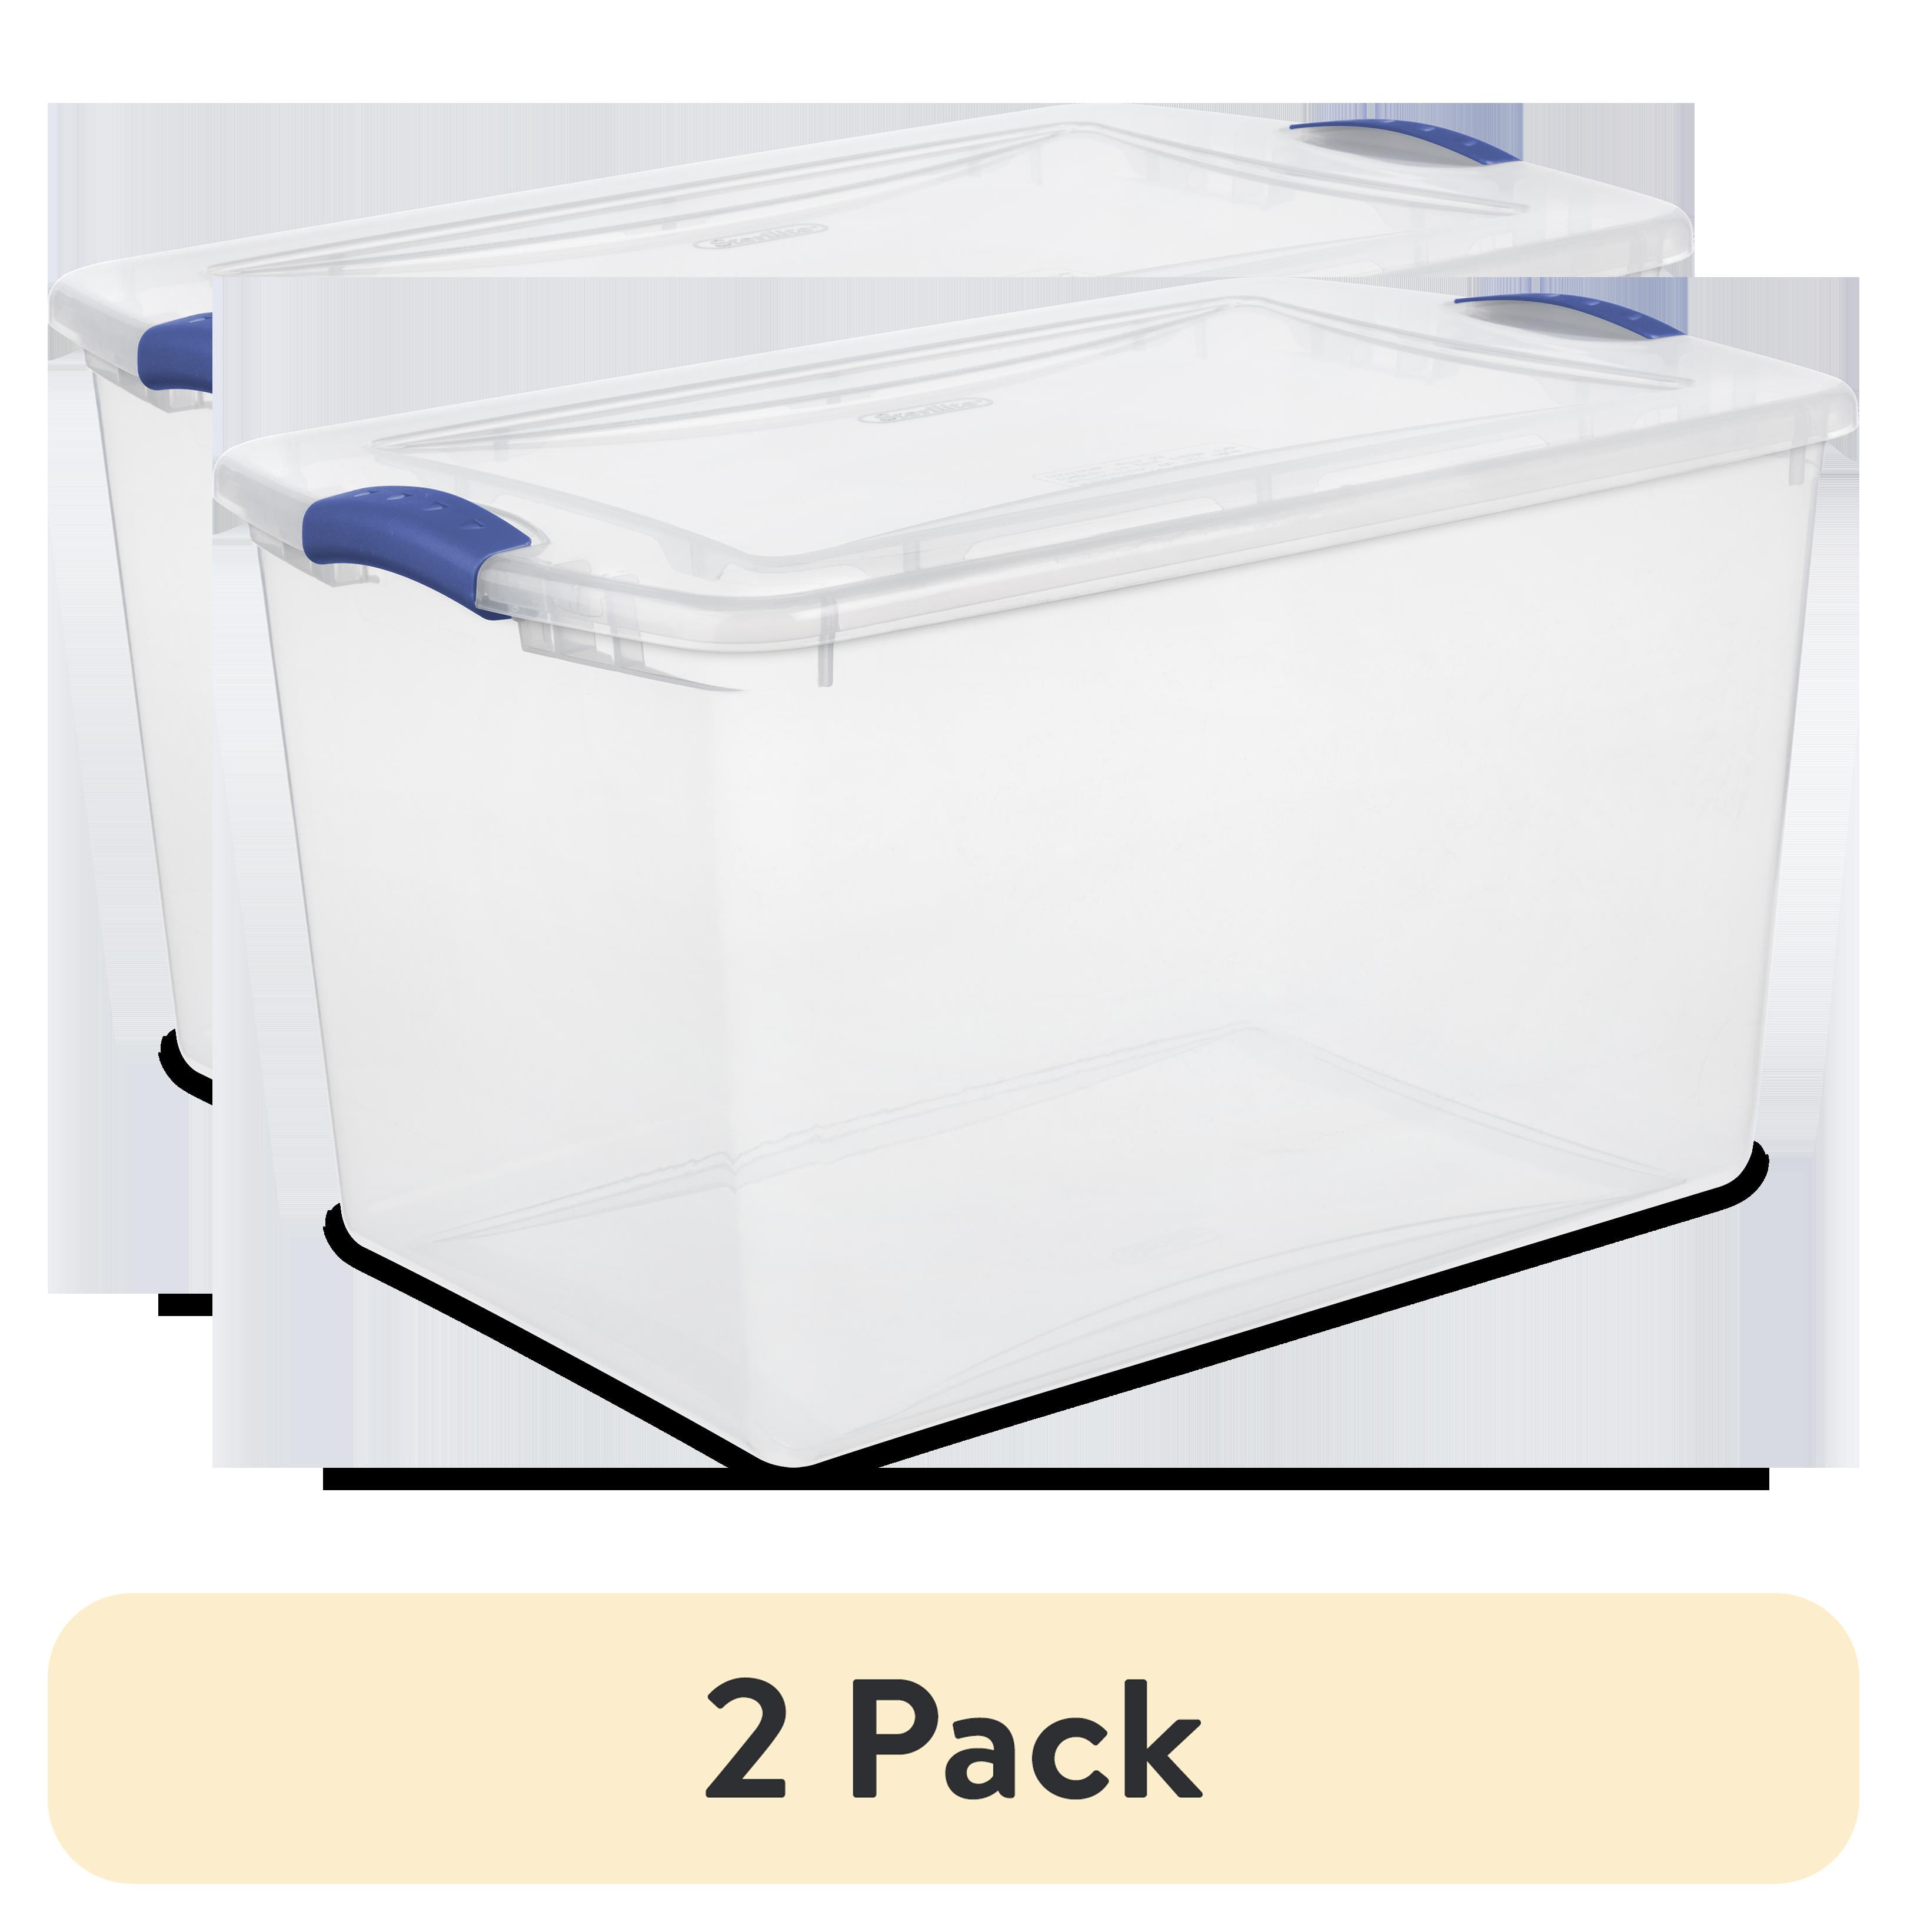 (4 pack) Sterilite 66 Quart. Latch Box Plastic, Stadium Blue, Set of 6